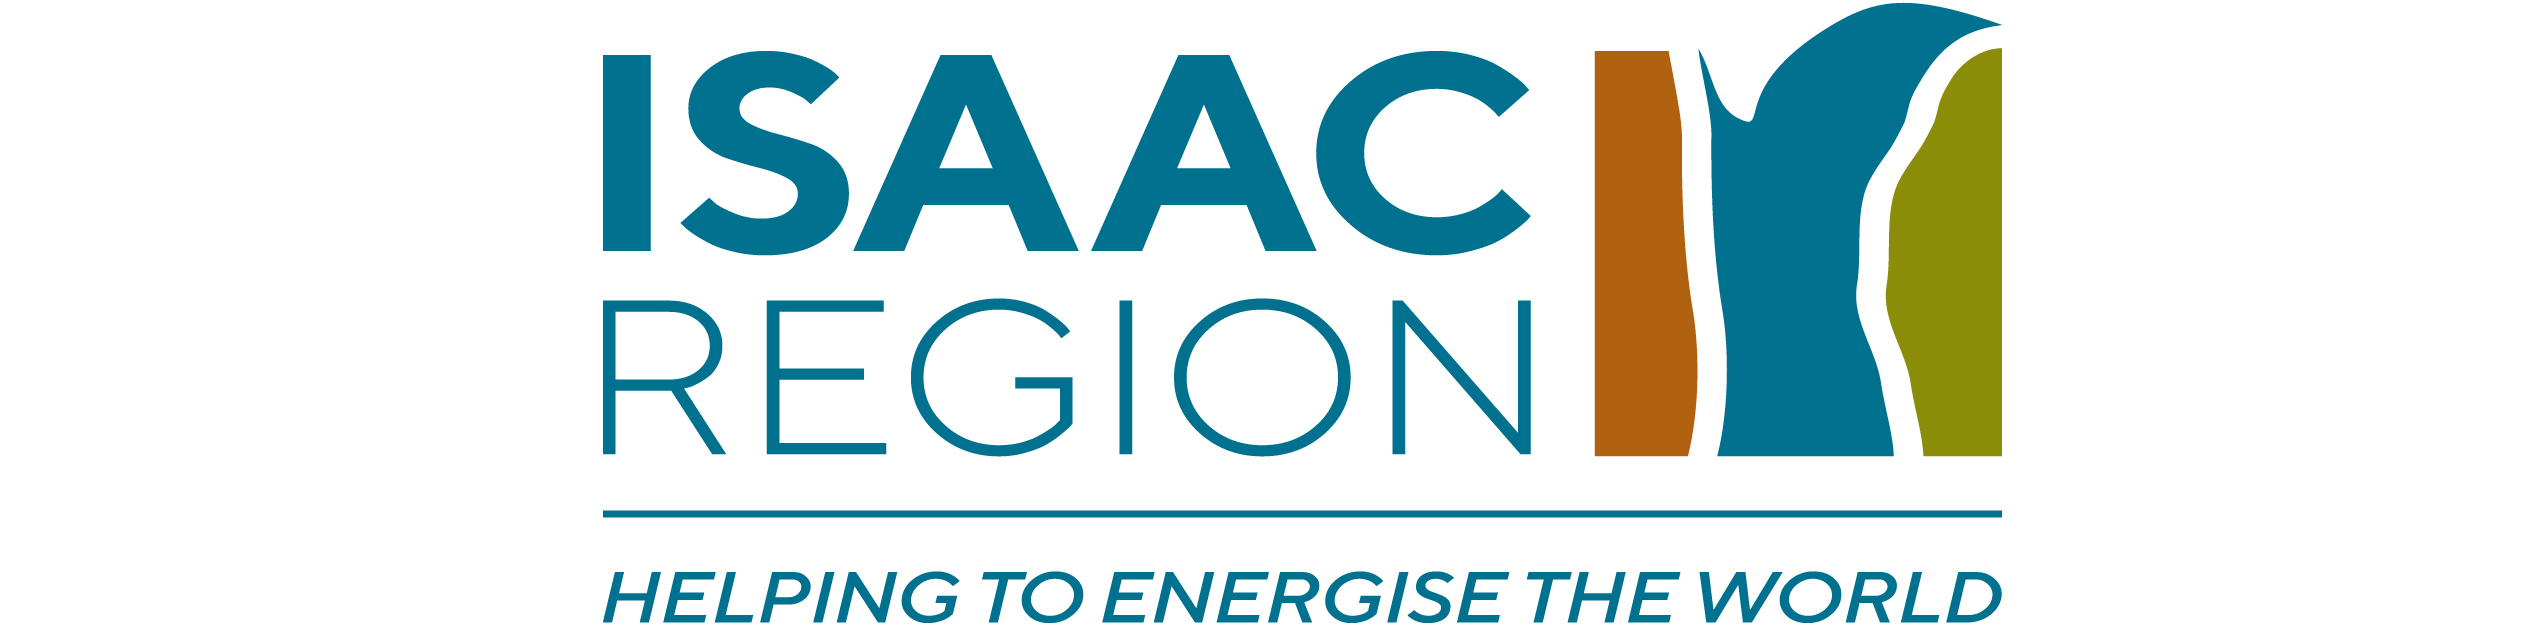 Issac Region logo Optimised